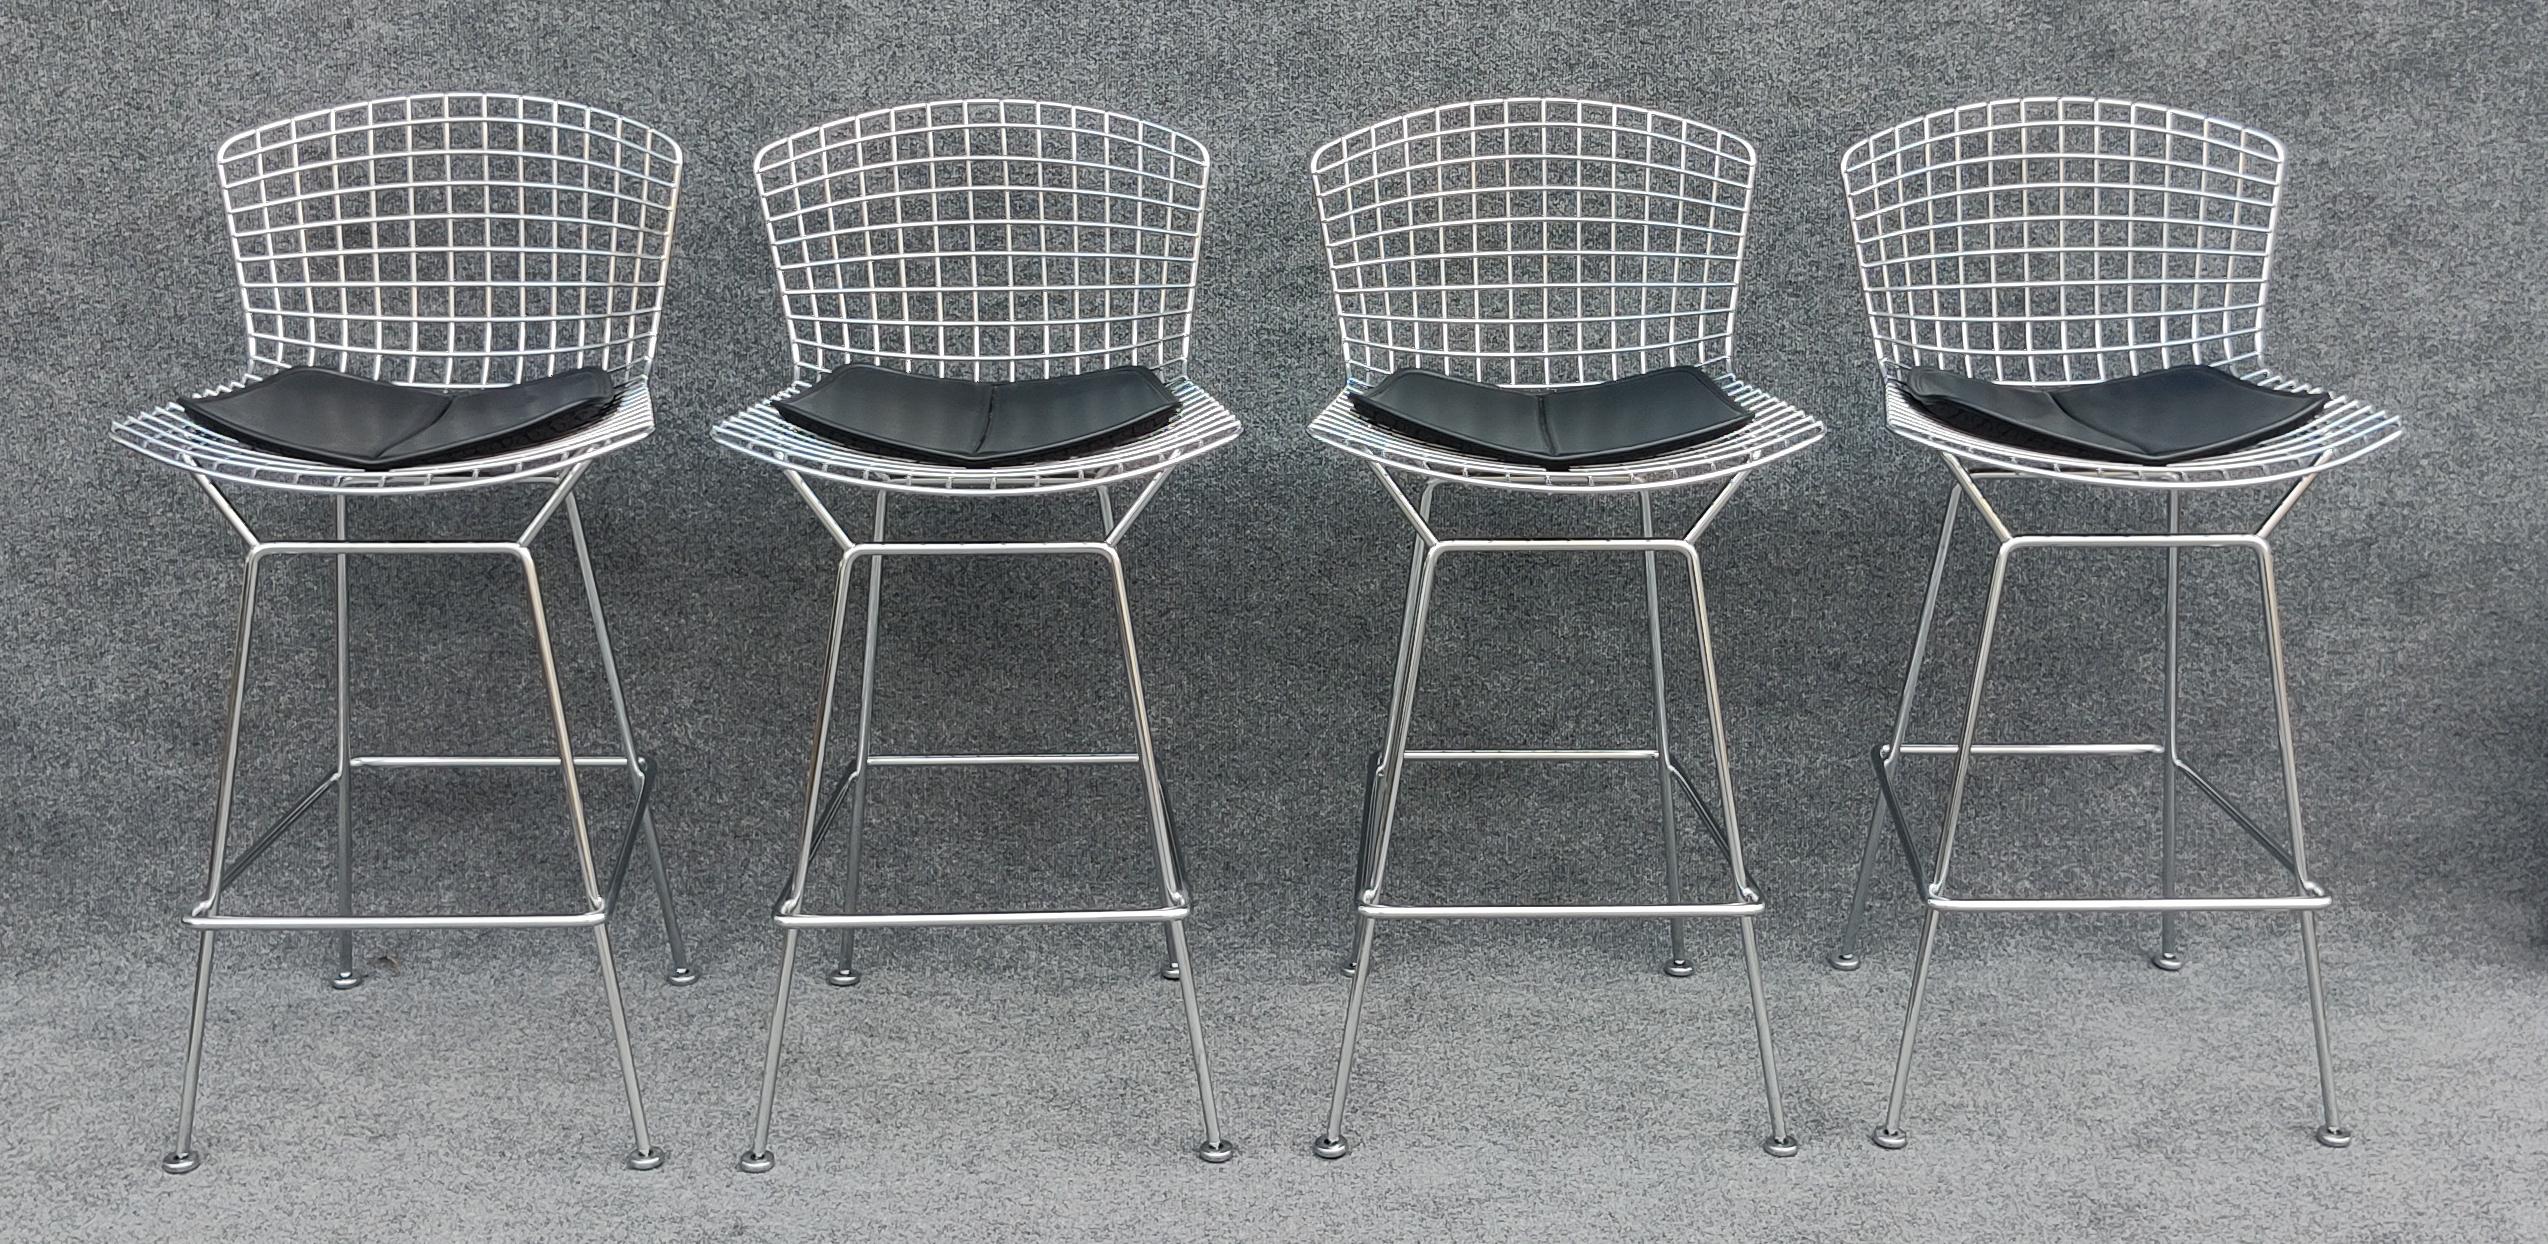 Dieser Stuhl wurde Anfang der 1950er Jahre von dem genialen Nachwuchsdesigner Harry Bertoia entworfen und ist heute Teil einer ganzen Serie, die von Knoll hergestellt wird. Zusammen mit Bertoias Diamond Chair, Bird Chair und vielen anderen wurde